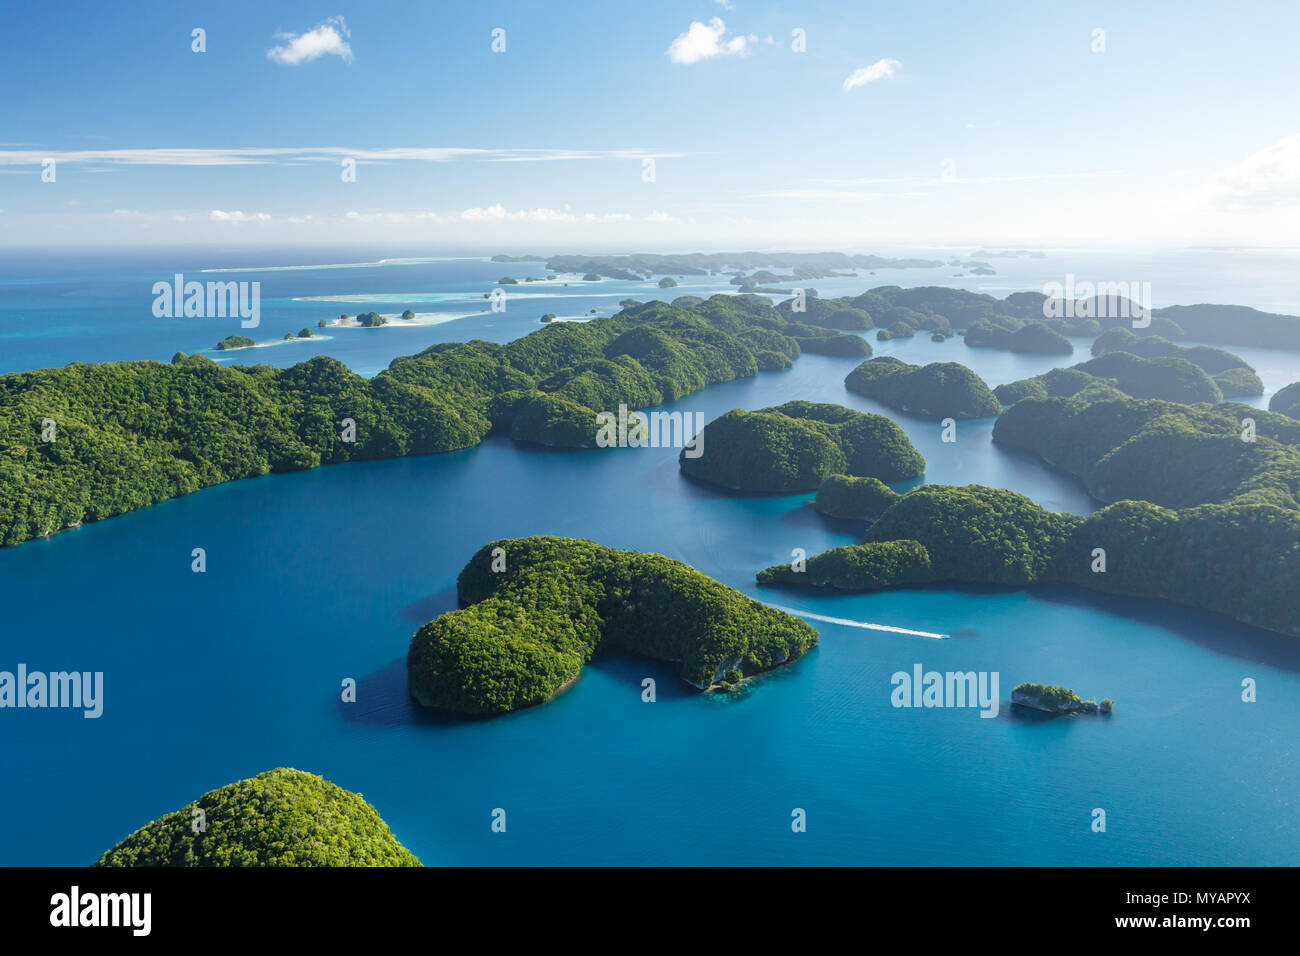 Luftaufnahme von Boot unterwegs thru Korallenriffe, Korallenatolle und Labyrinth der klumpig Inseln umgeben vom türkisblauen Wasser des Südpazifik Stockfoto